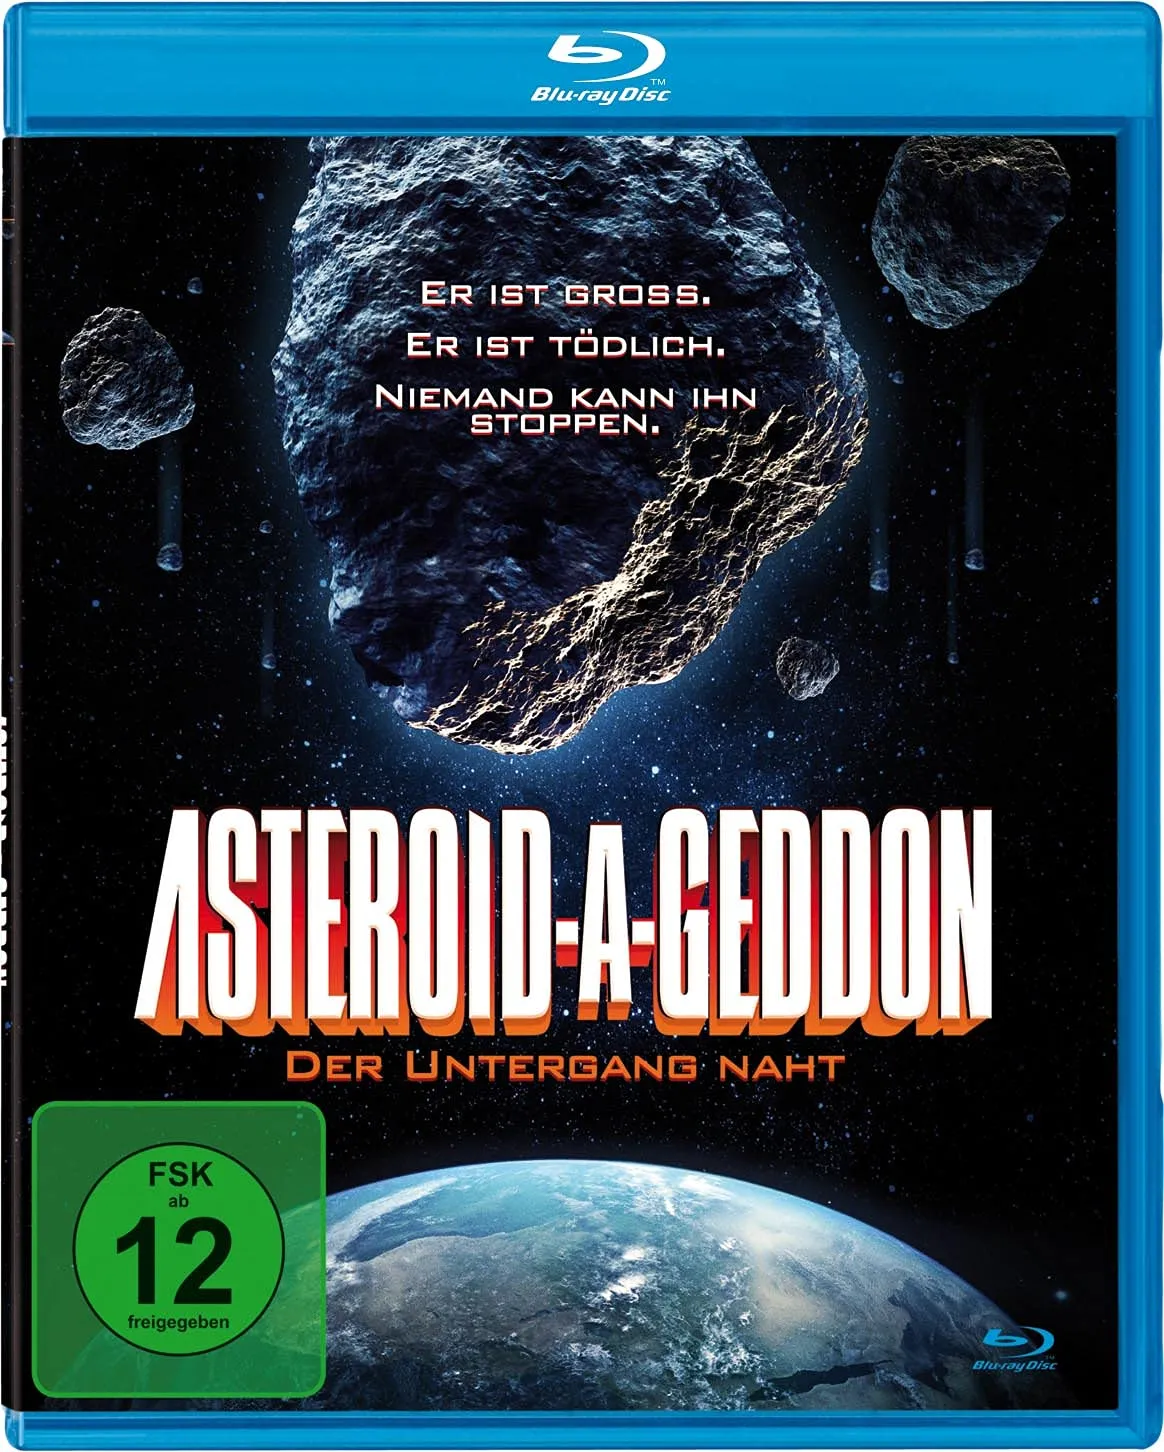 Asteroid-A-Geddon - Der Untergang naht [Blu-ray] (Neu differenzbesteuert)